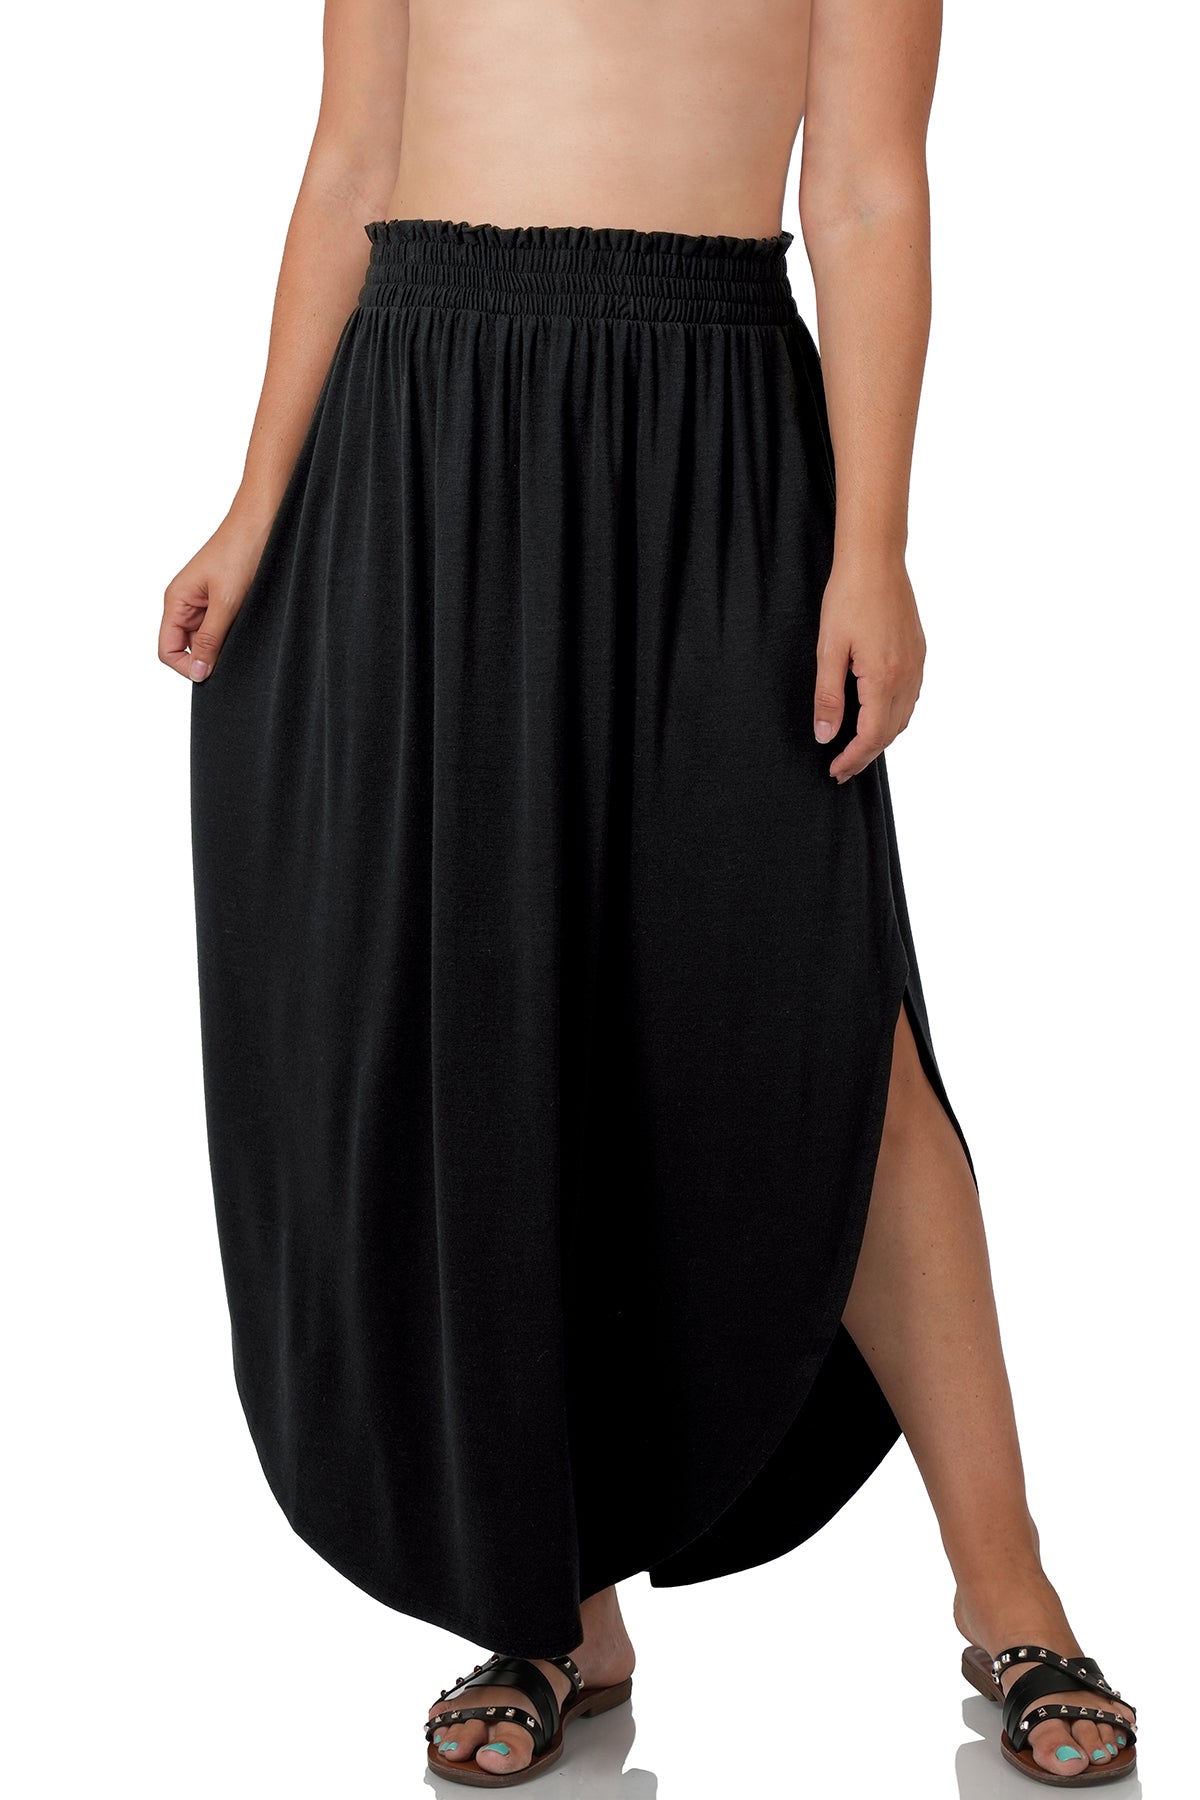 Zenana Smocked Waist Side Slit Maxi Skirt - Black